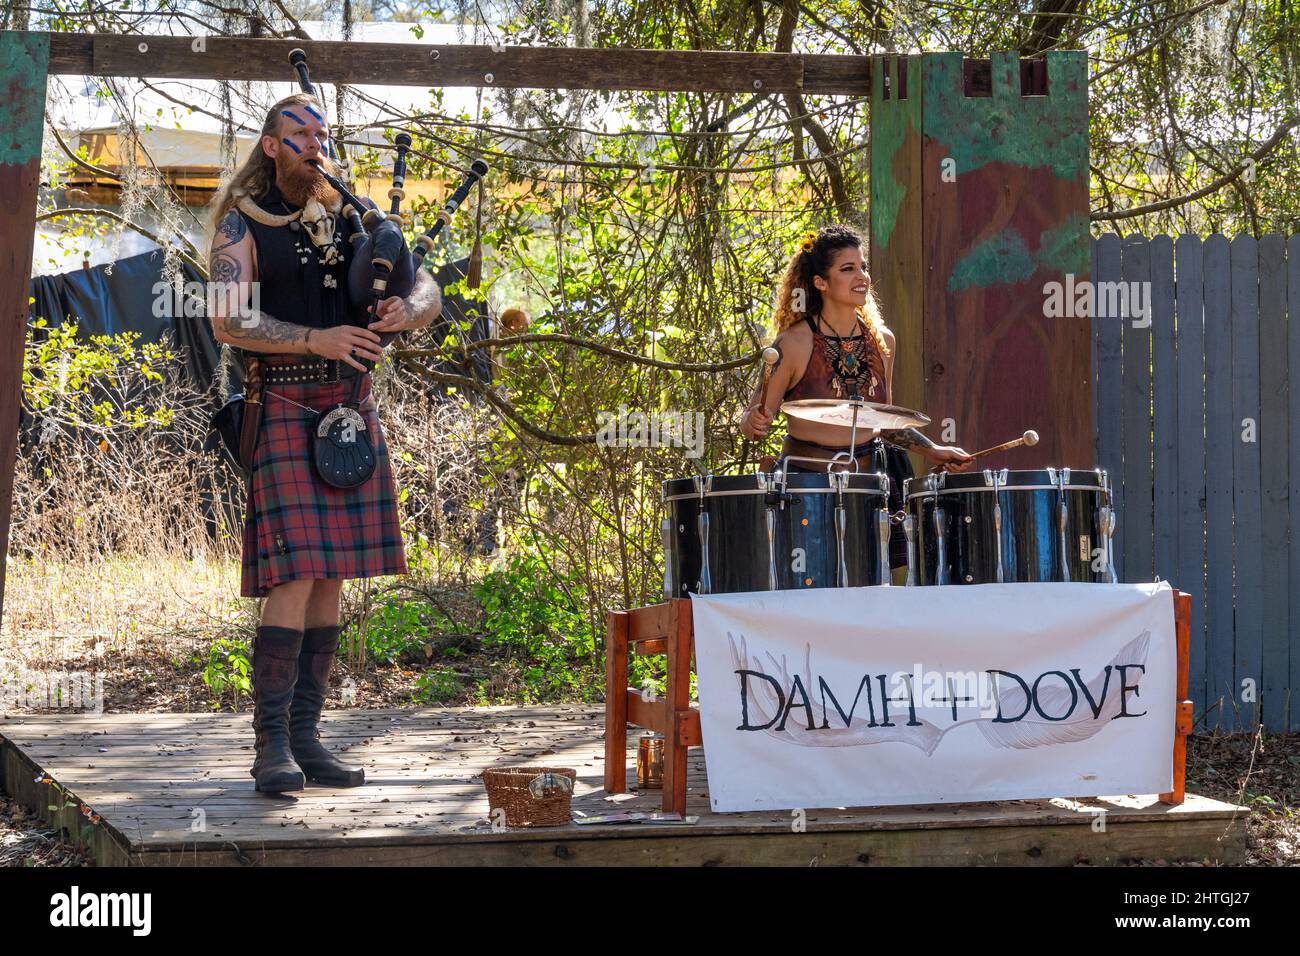 Dúo musical de gaitas y tambores Damh y Dove en el Bay Area Renaissance Festival - Dade City, Florida, Estados Unidos Foto de stock